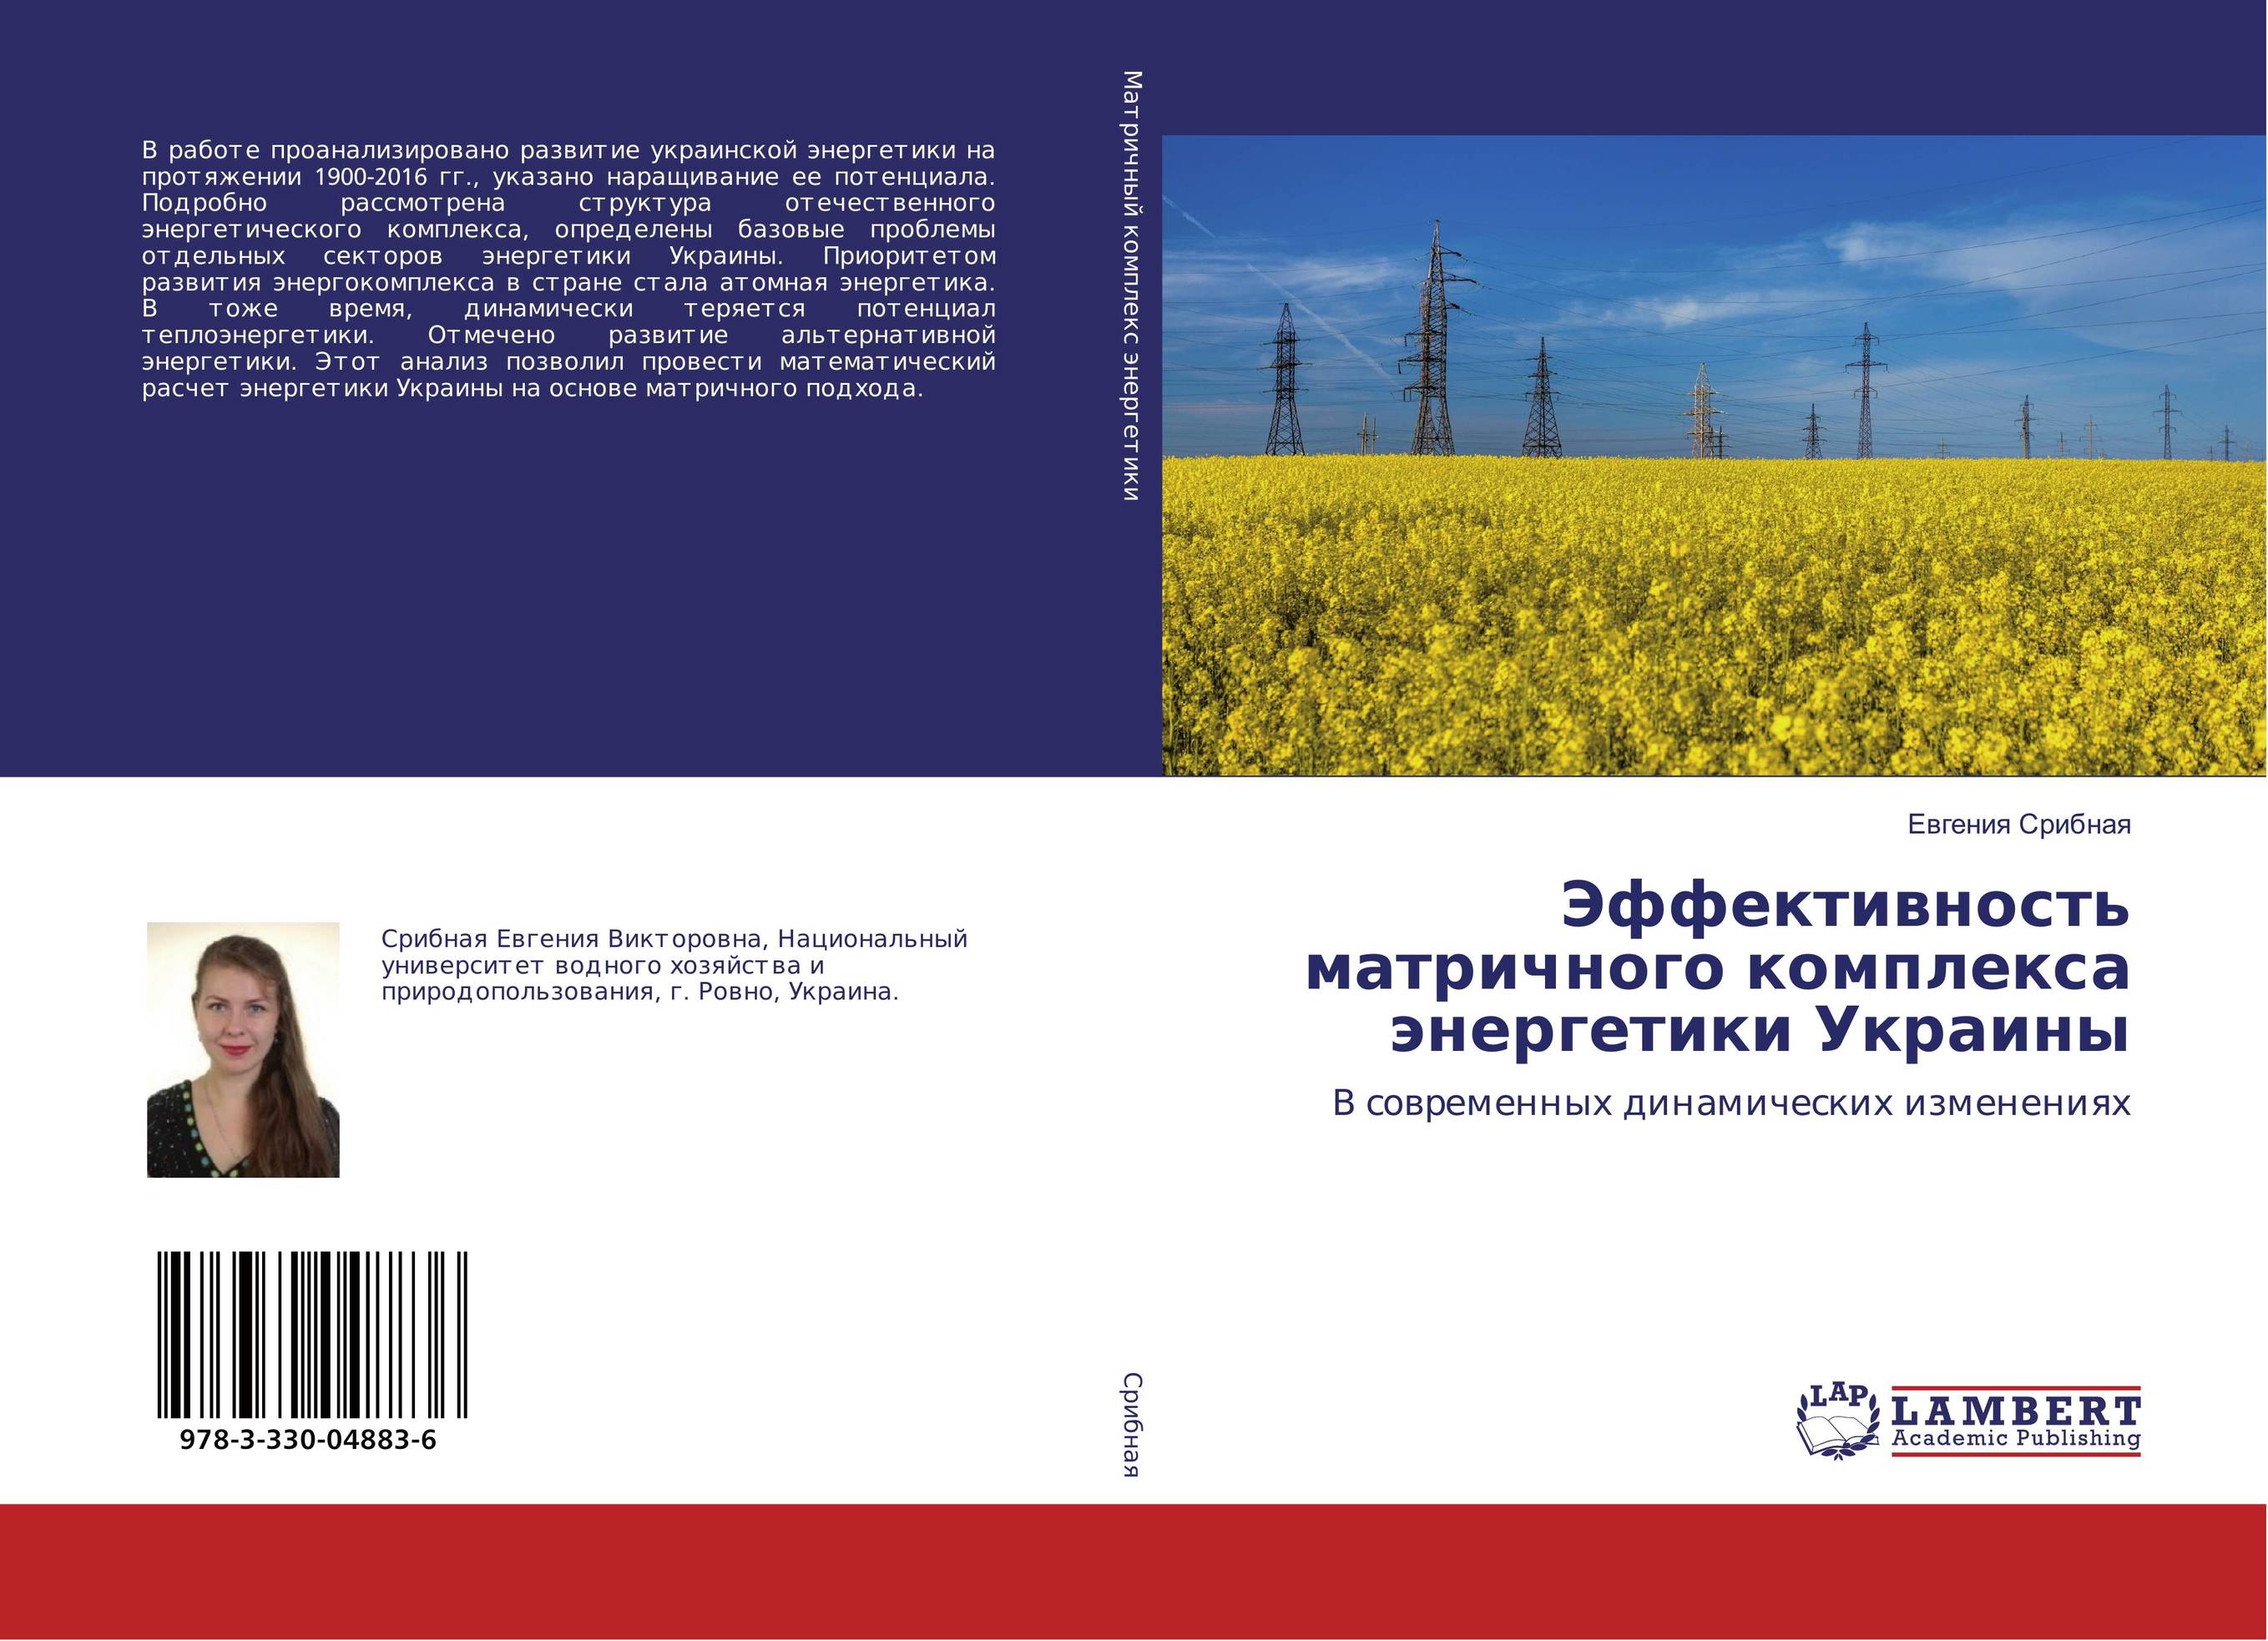 
        Эффективность матричного комплекса энергетики Украины. В современных динамических изменениях.
      